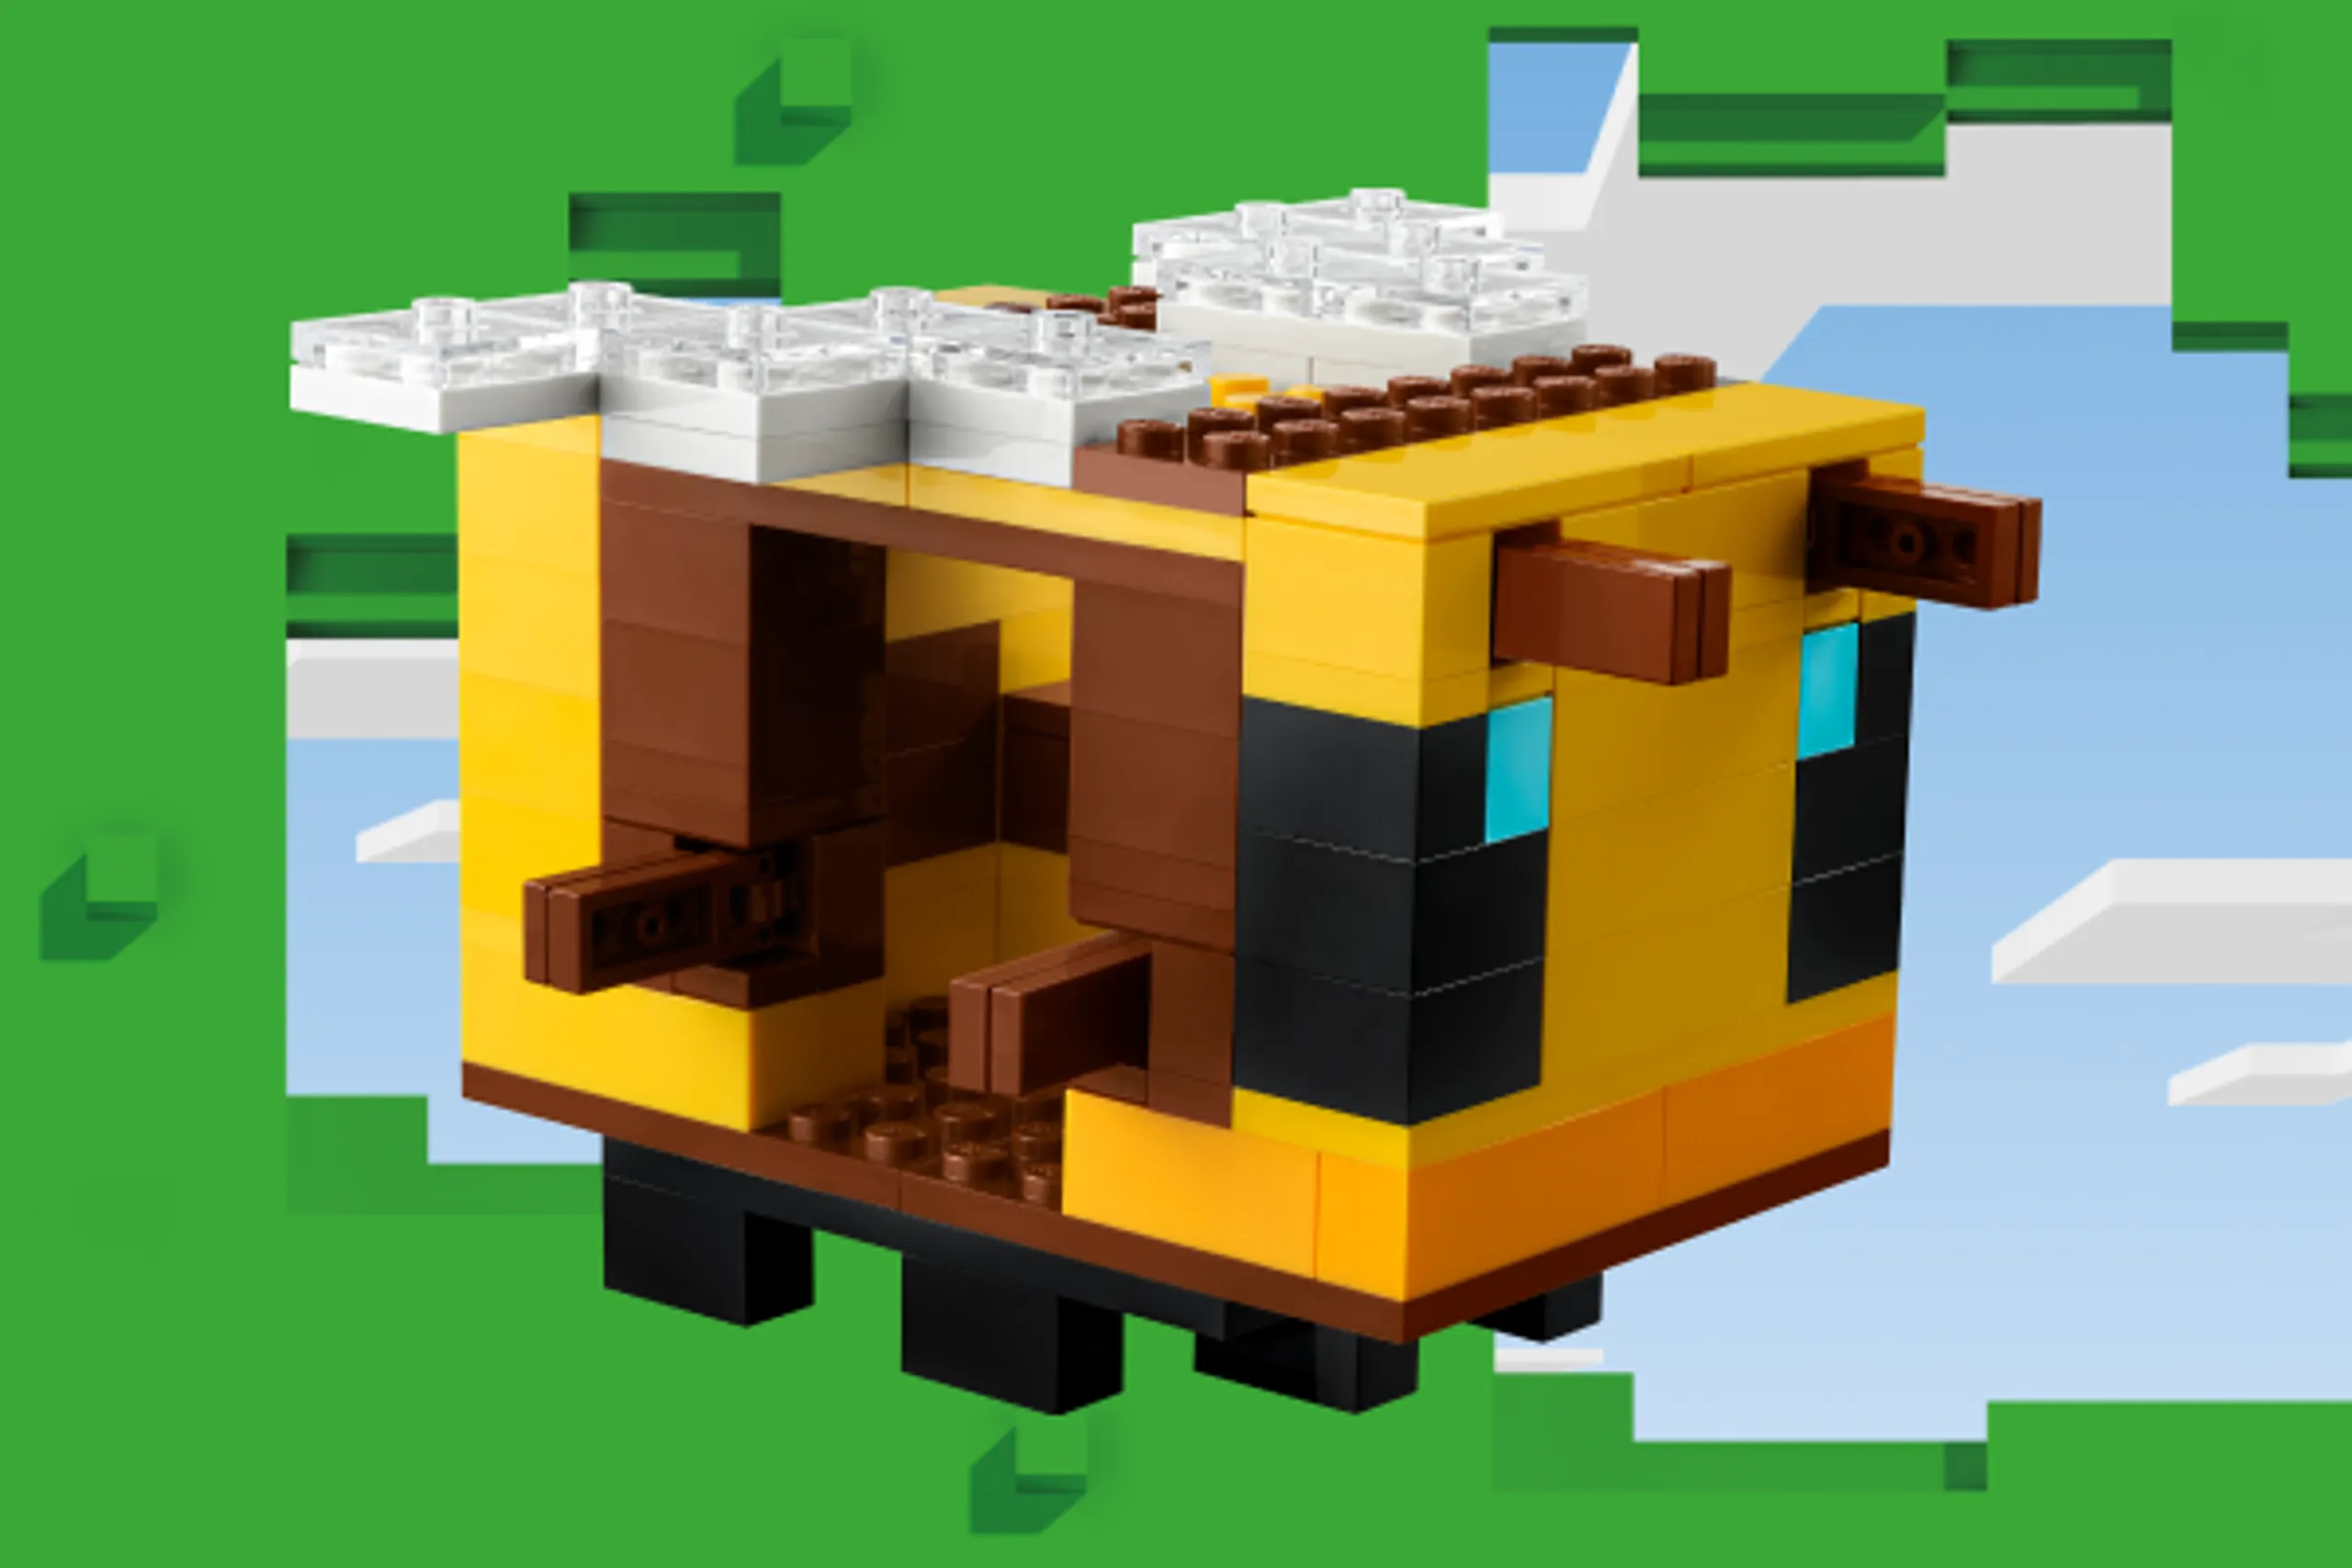 LEGO® MINECRAFT - LEGO.com for kids